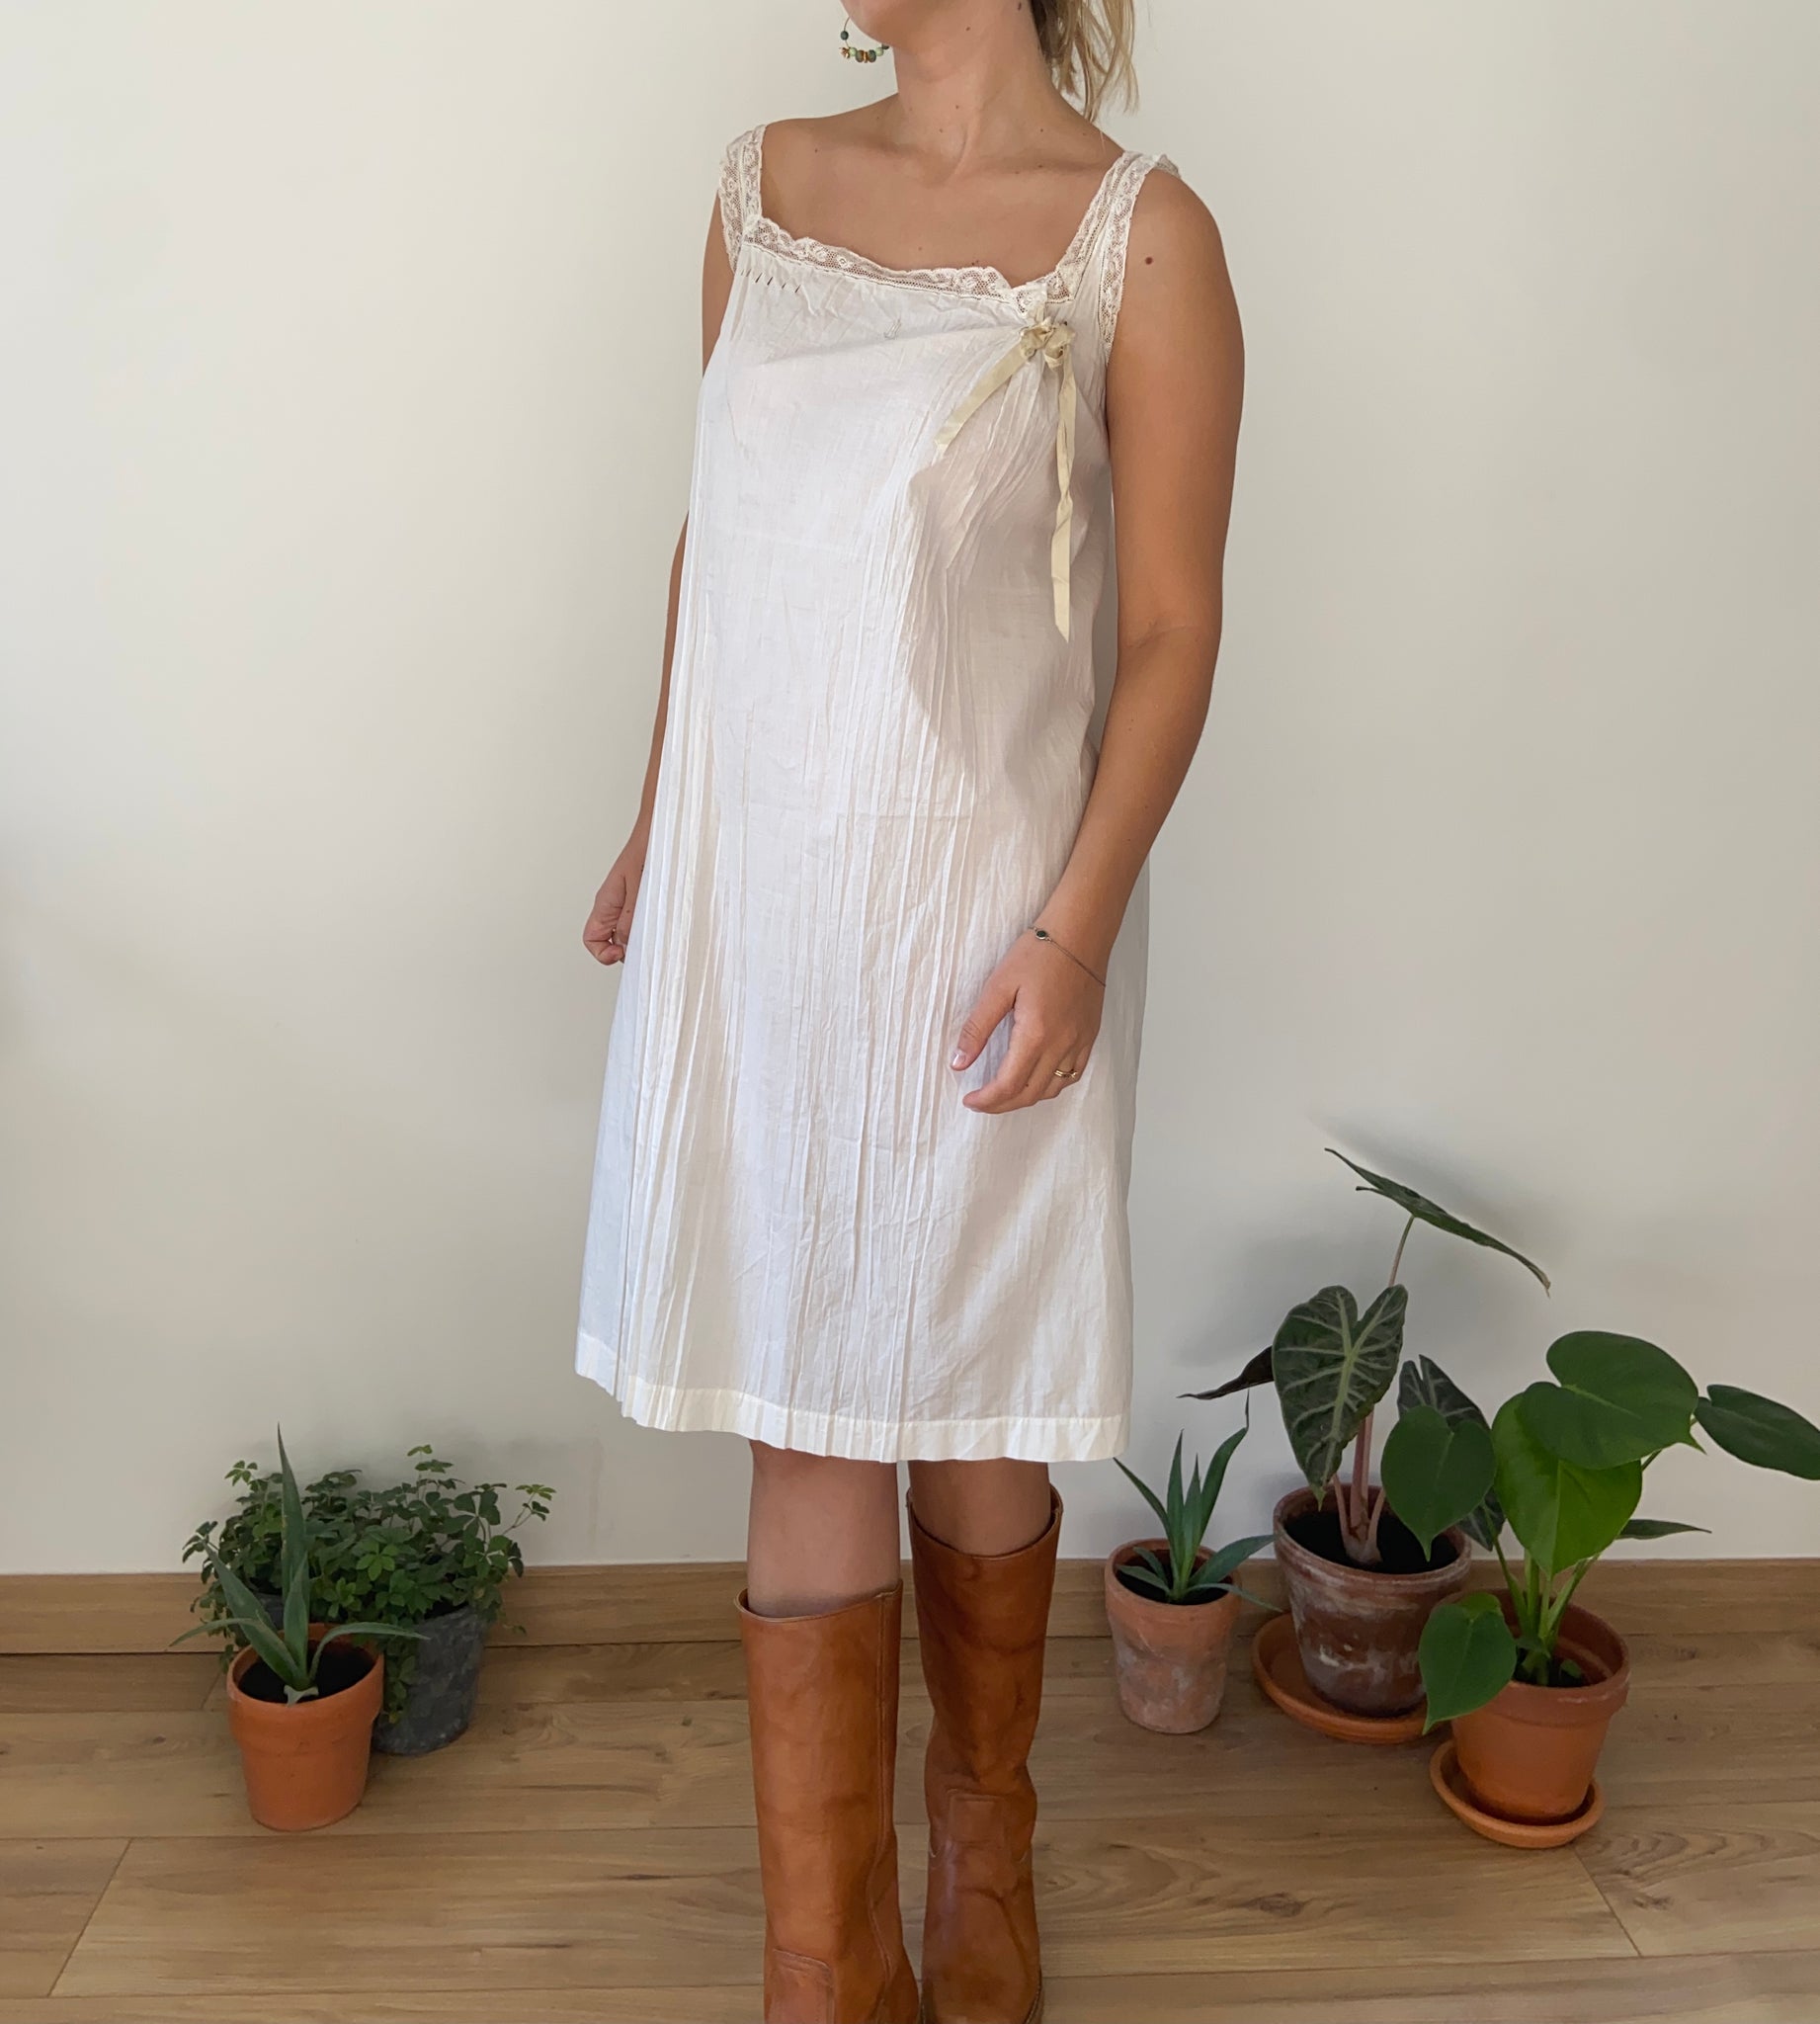 white cotton nightgown